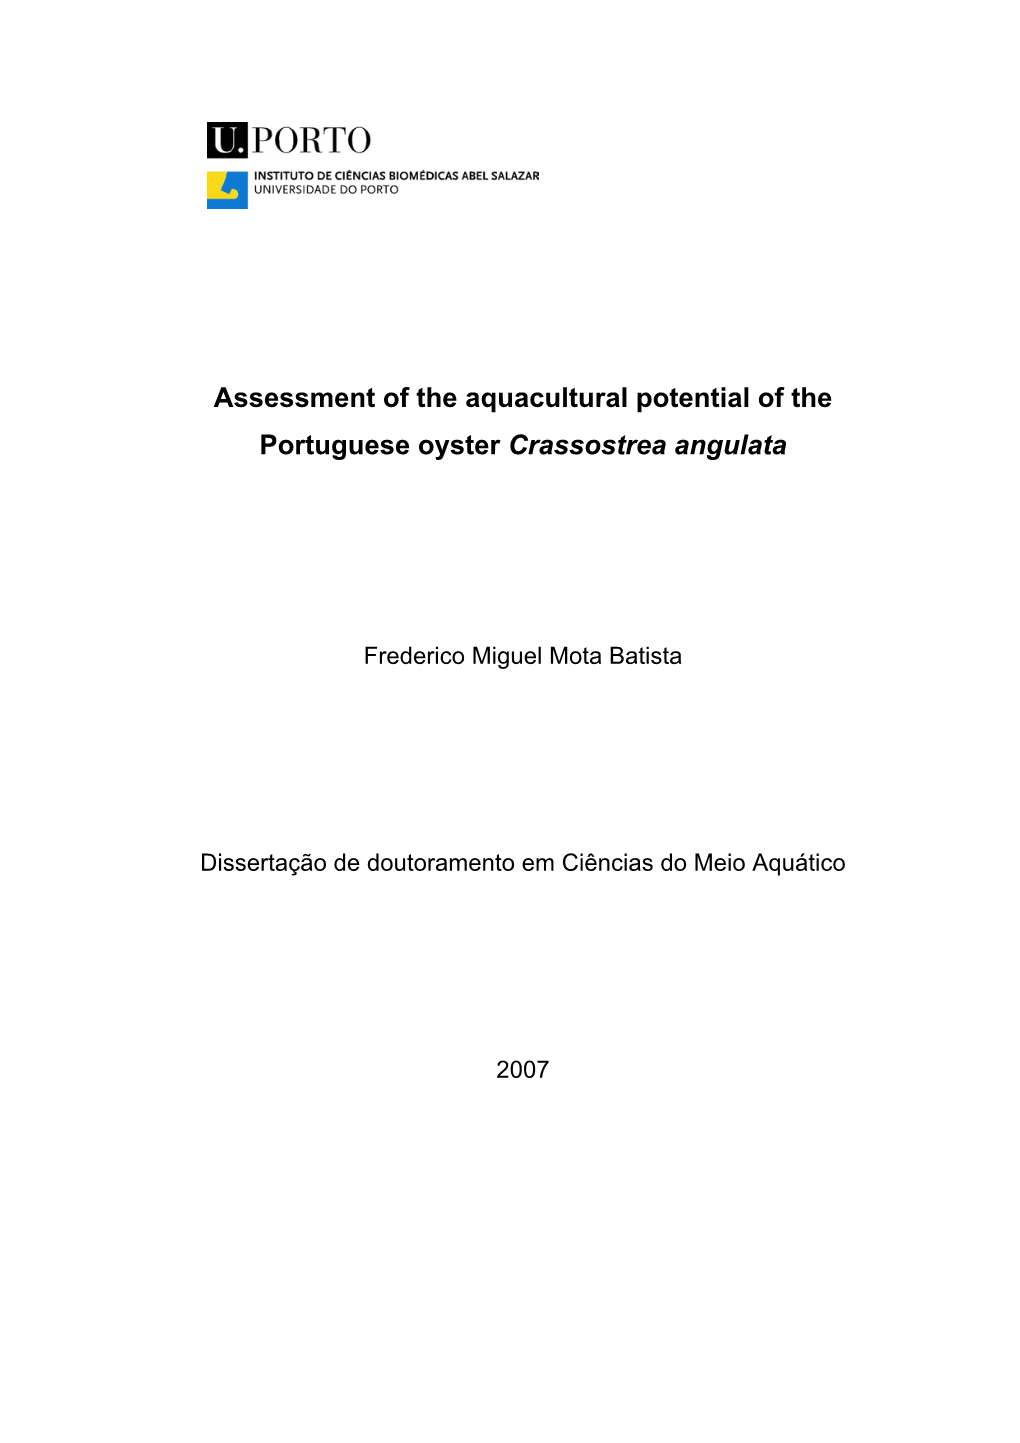 Assessment of the Aquacultural Potential of the Portuguese Oyster Crassostrea Angulata